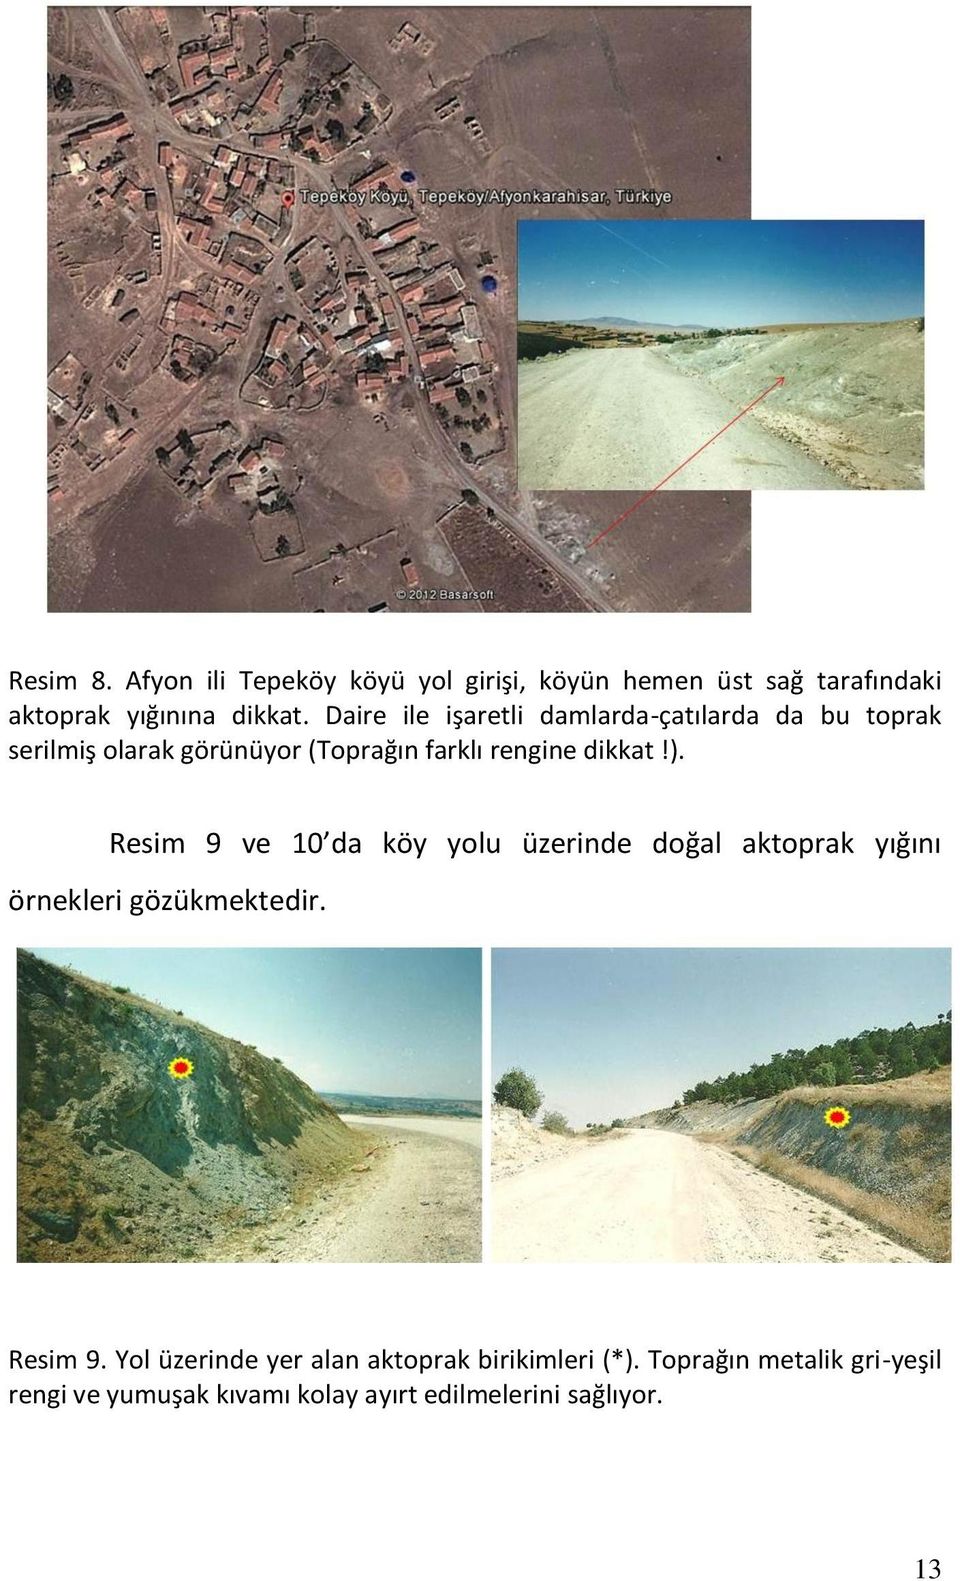 Resim 9 ve 10 da köy yolu üzerinde doğal aktoprak yığını örnekleri gözükmektedir. Resim 9.